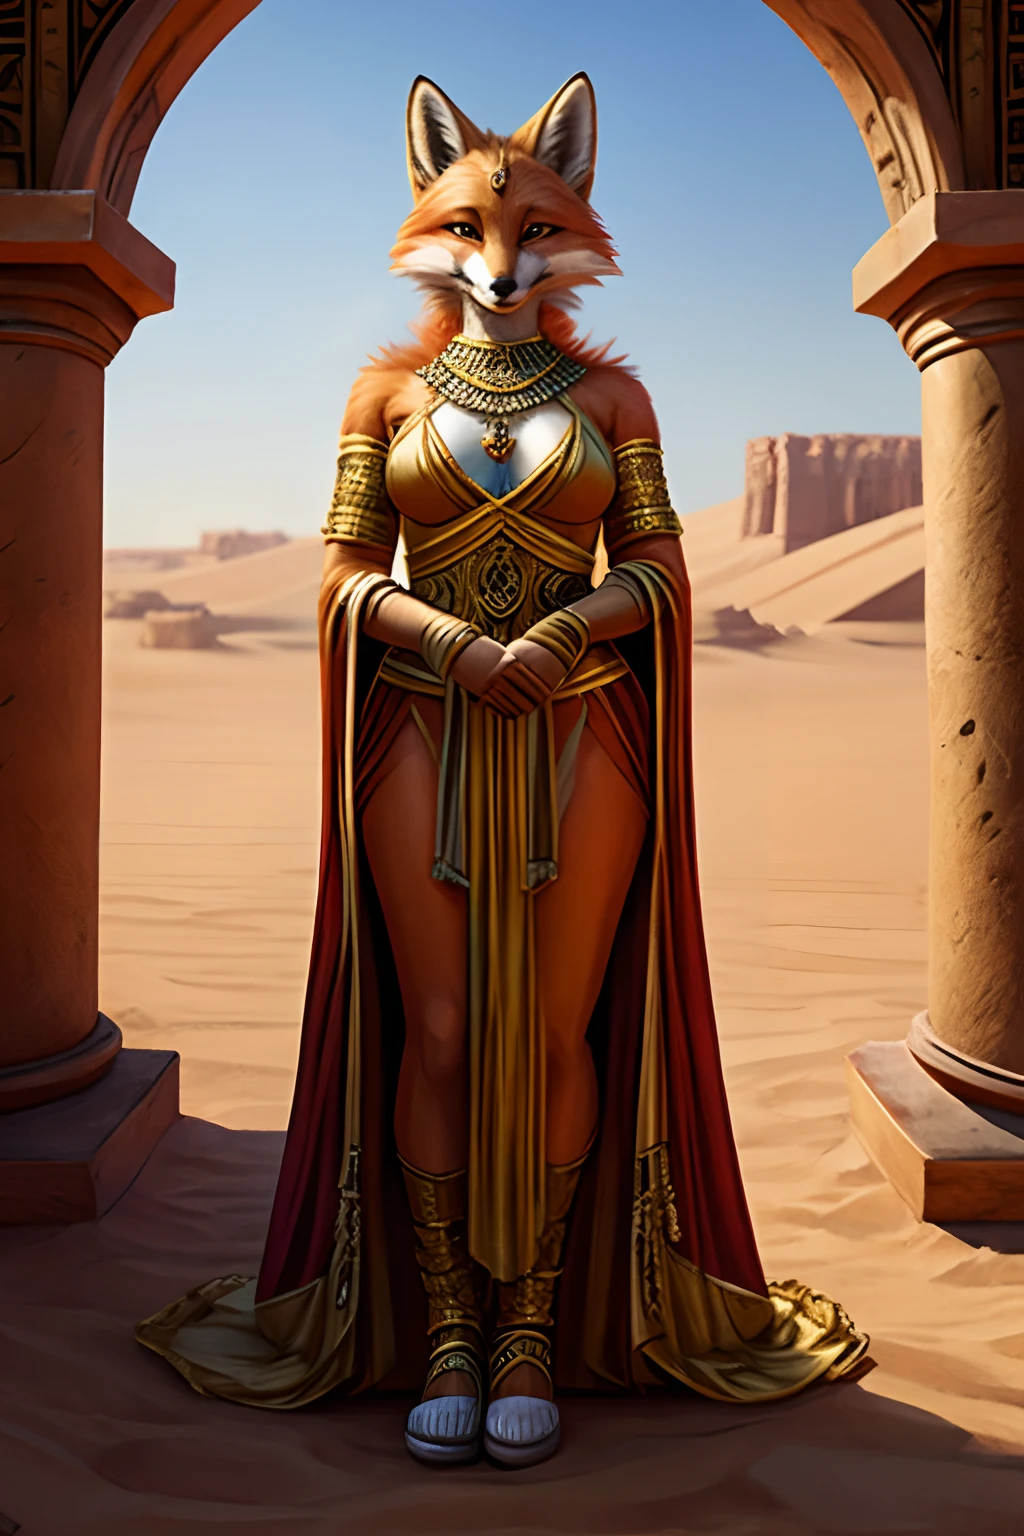 скромная королева-лисица с извращенным умом, носящая откровенную королевскую одежду, которая подошла бы королевству в пустыне